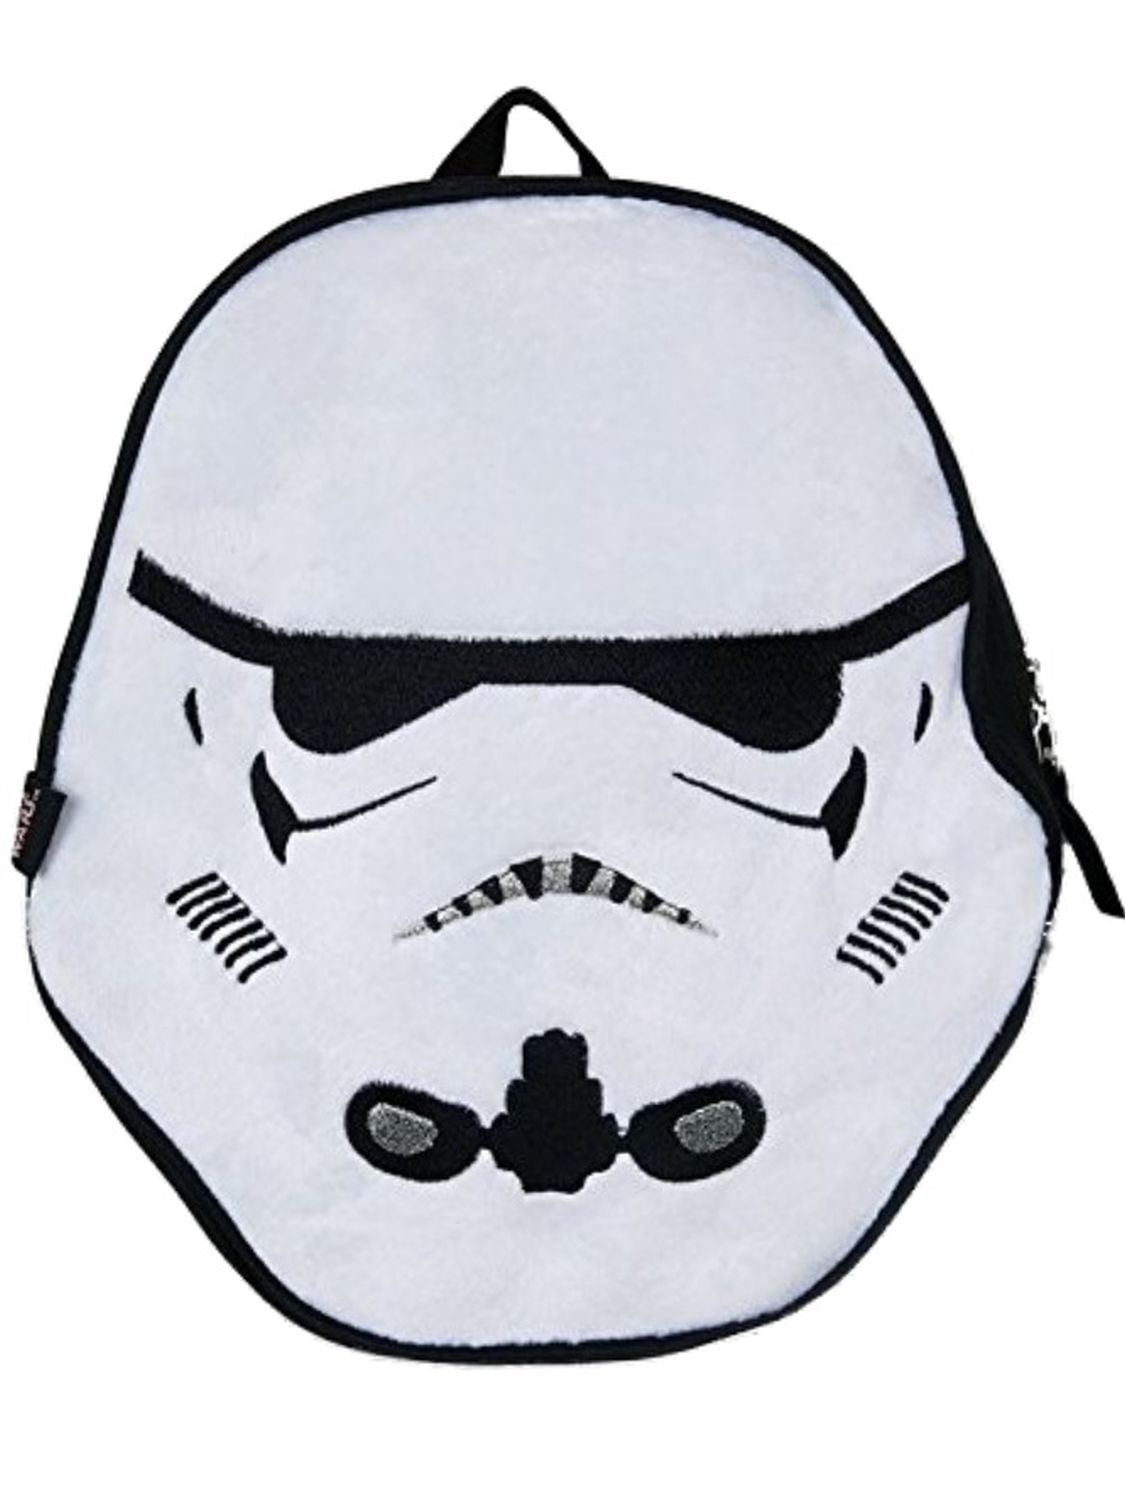 stormtroopers Star Wars 3d Shoulder Bag The force awakens lenticular 